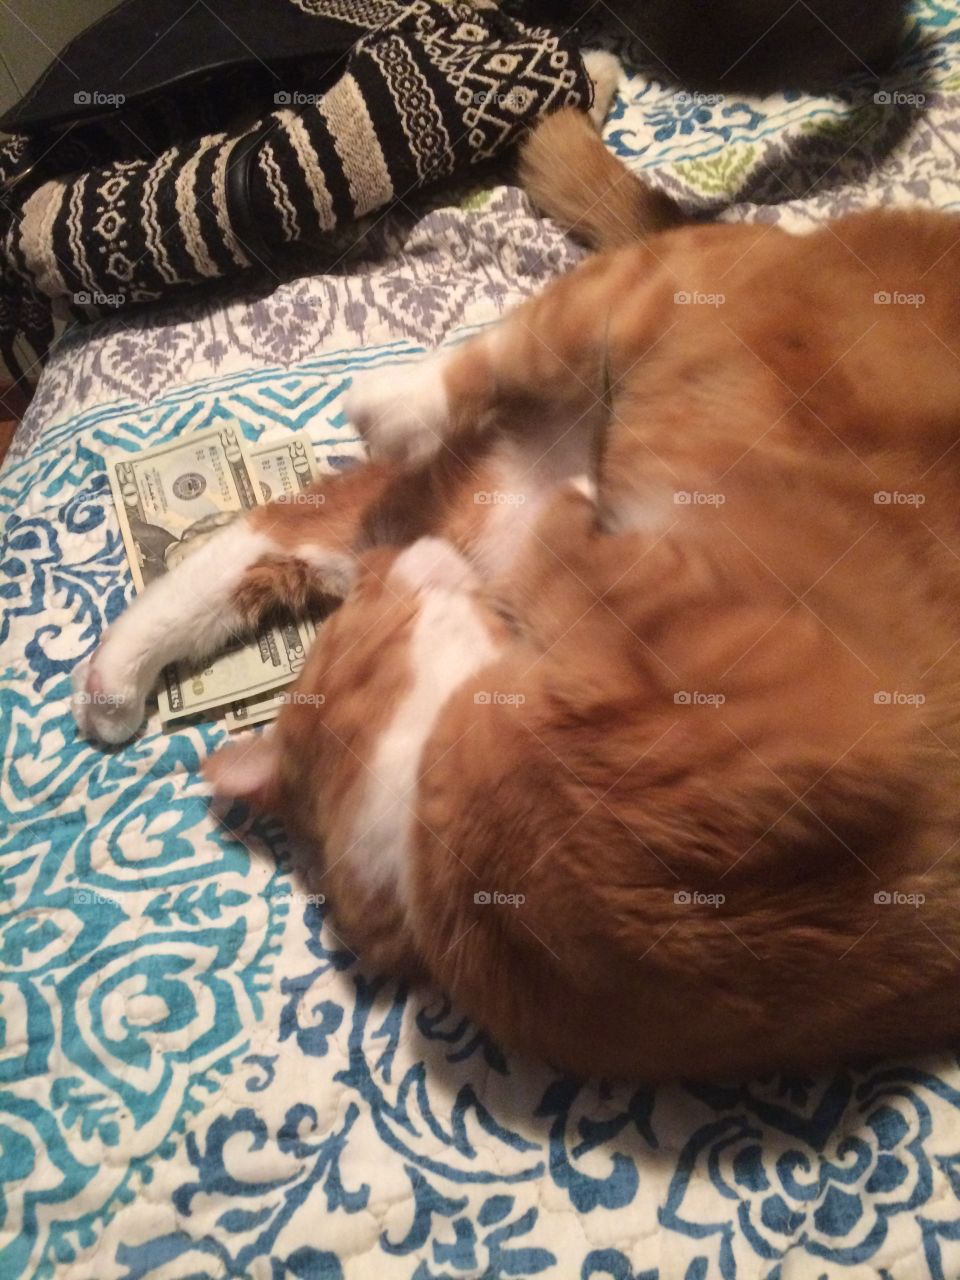 Morris stole the money 